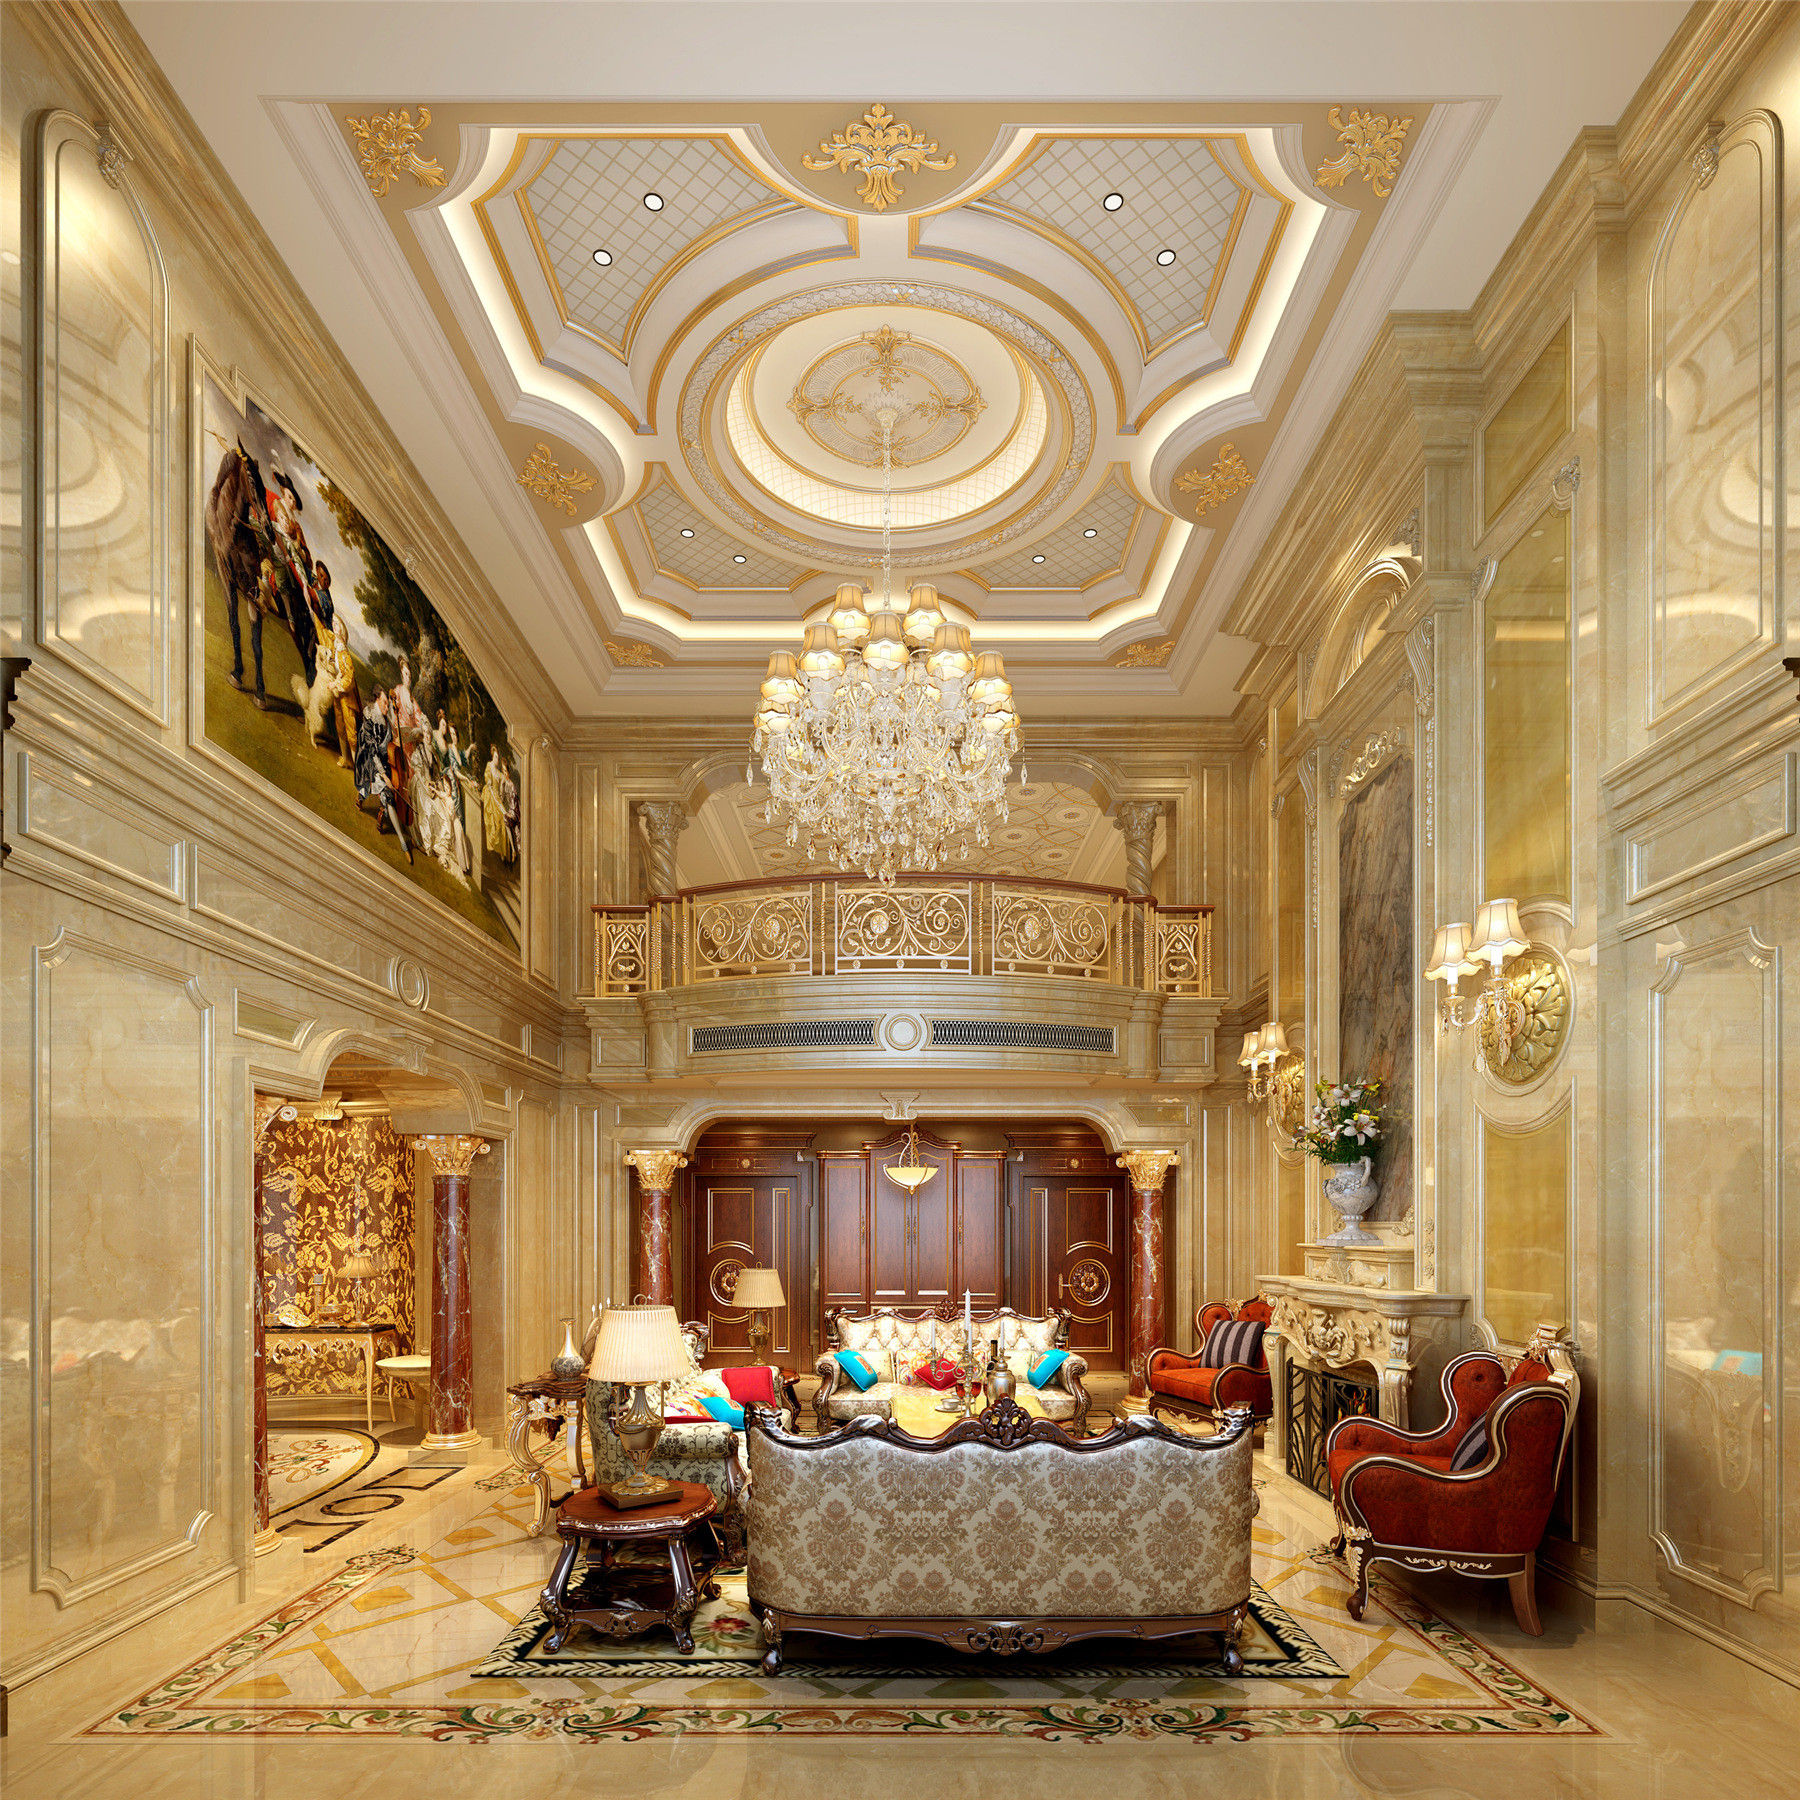 世界顶级豪华别墅客厅图片